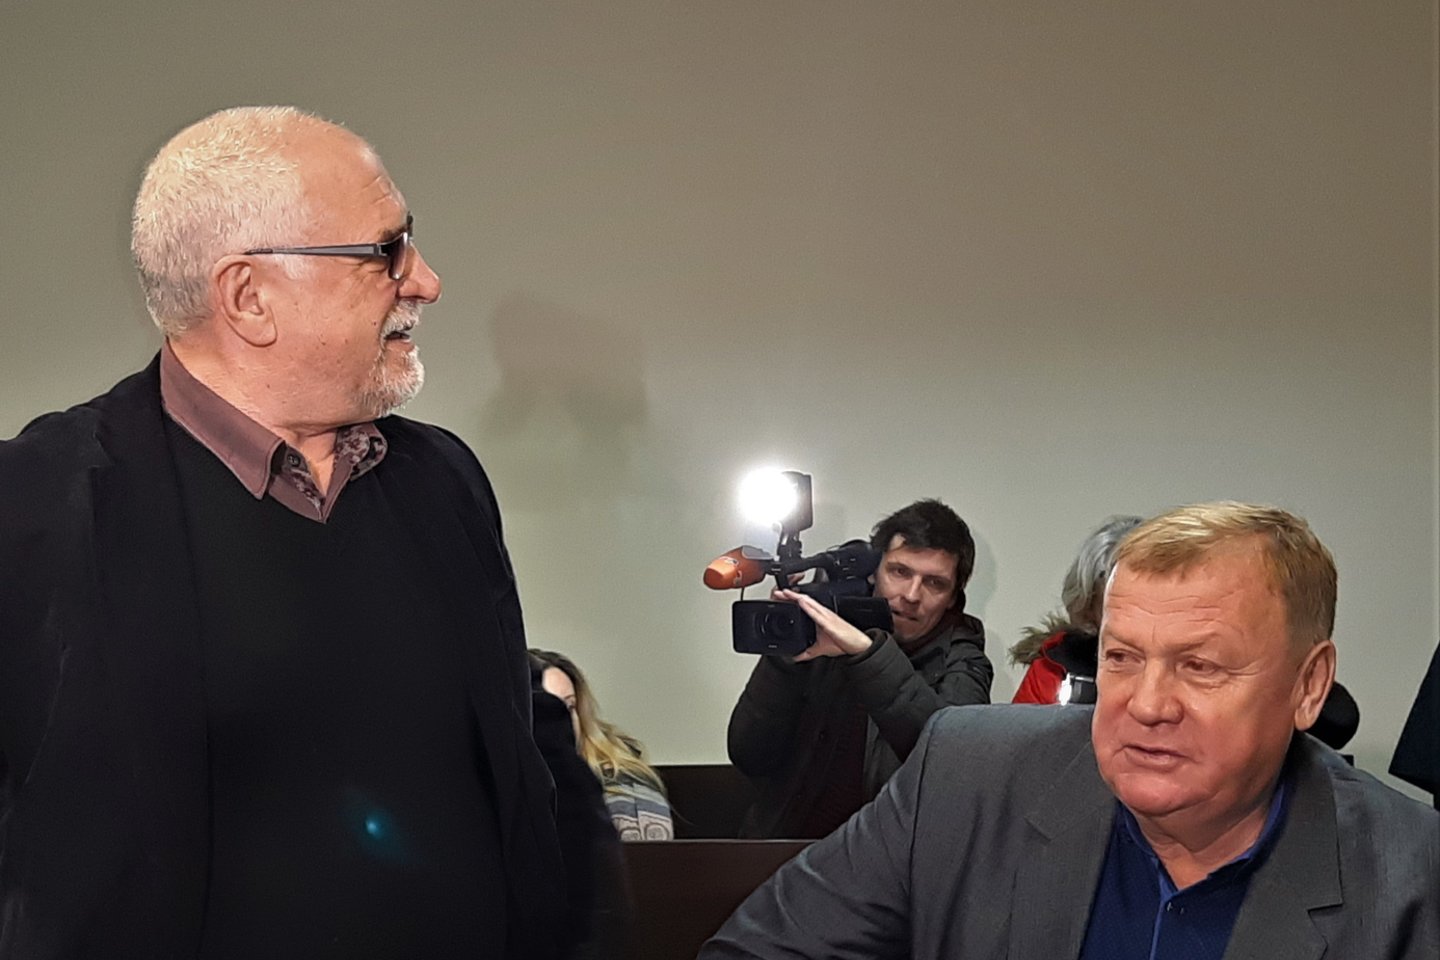 Klaipėdos apygardos teismas dėl dopingo nuteistų B.Vyšniausko ir A.Jakimavičiaus skundus atmetė.<br> G.Pilaičio nuotr.